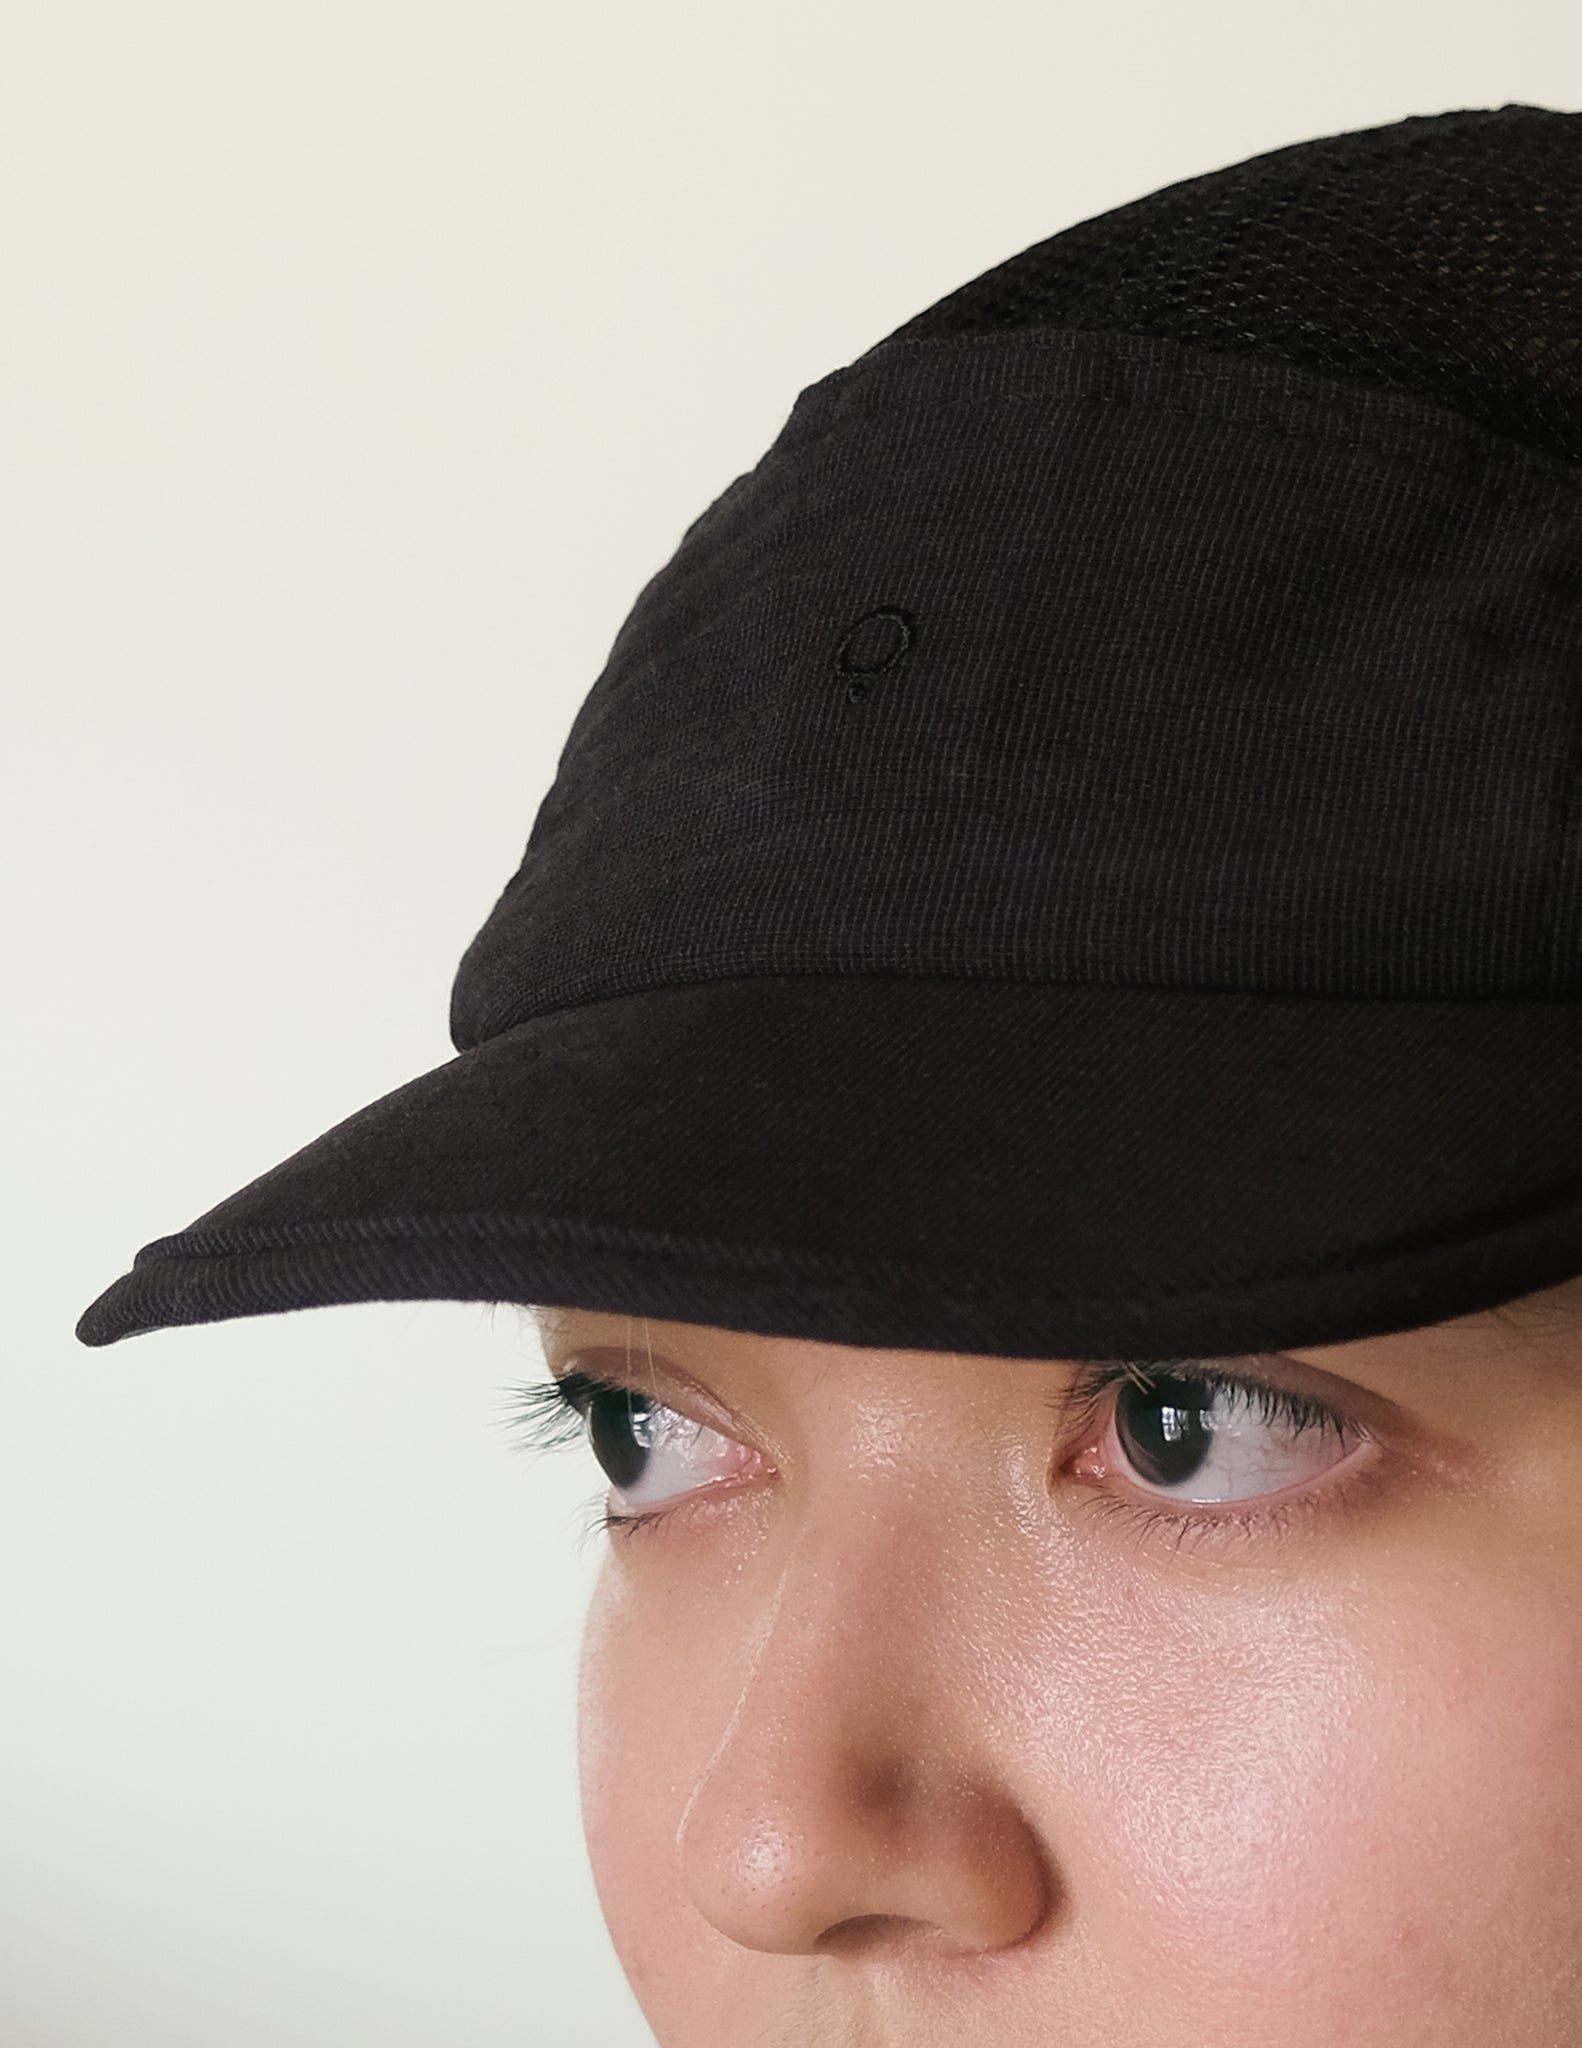 Unisex: The Soft Brim Mesh Cap (Black)